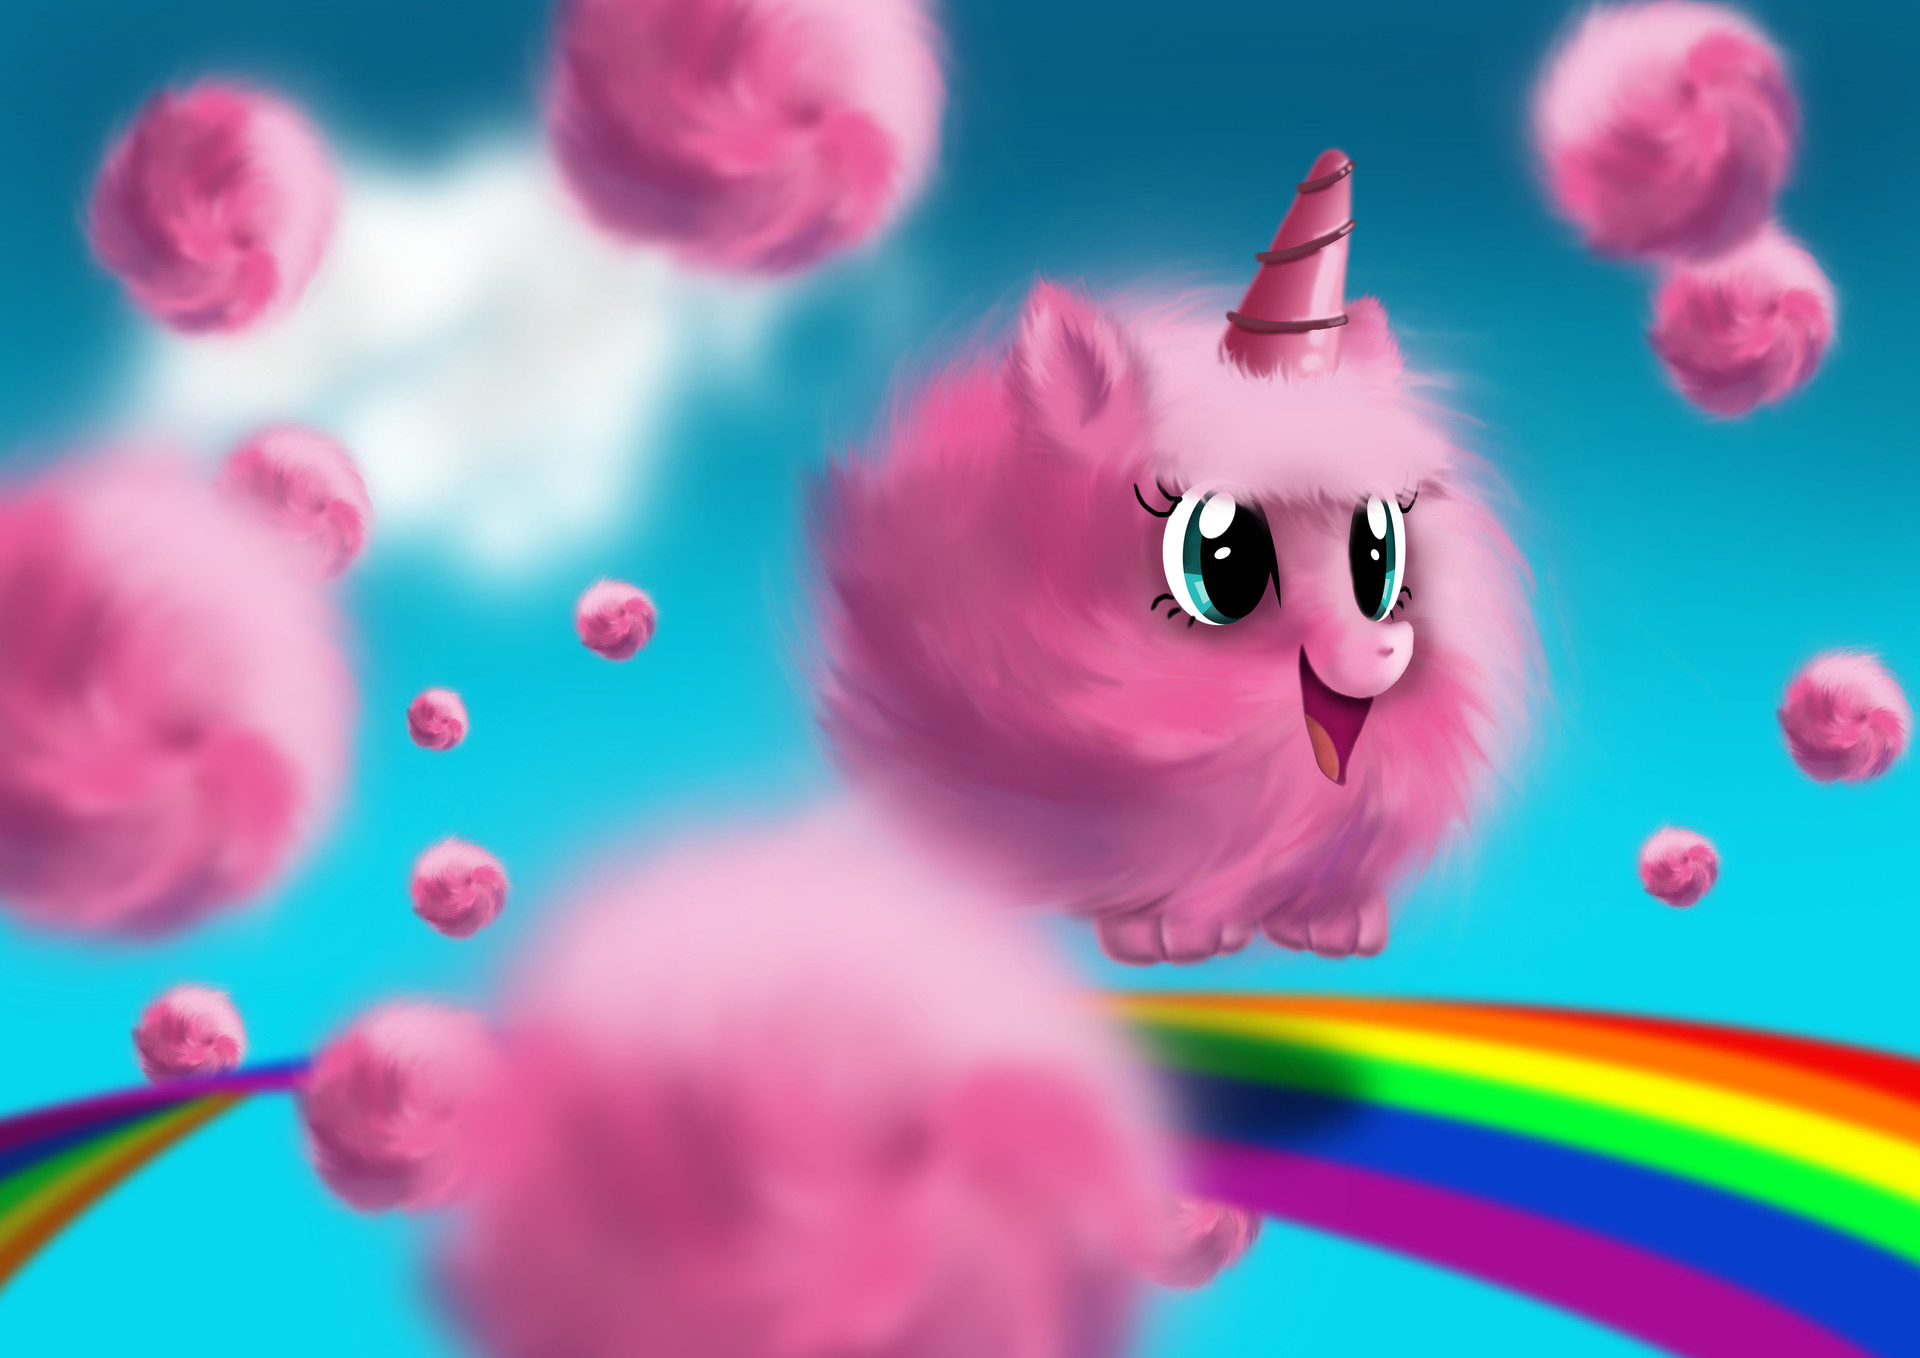 Pink fluffy unicorn